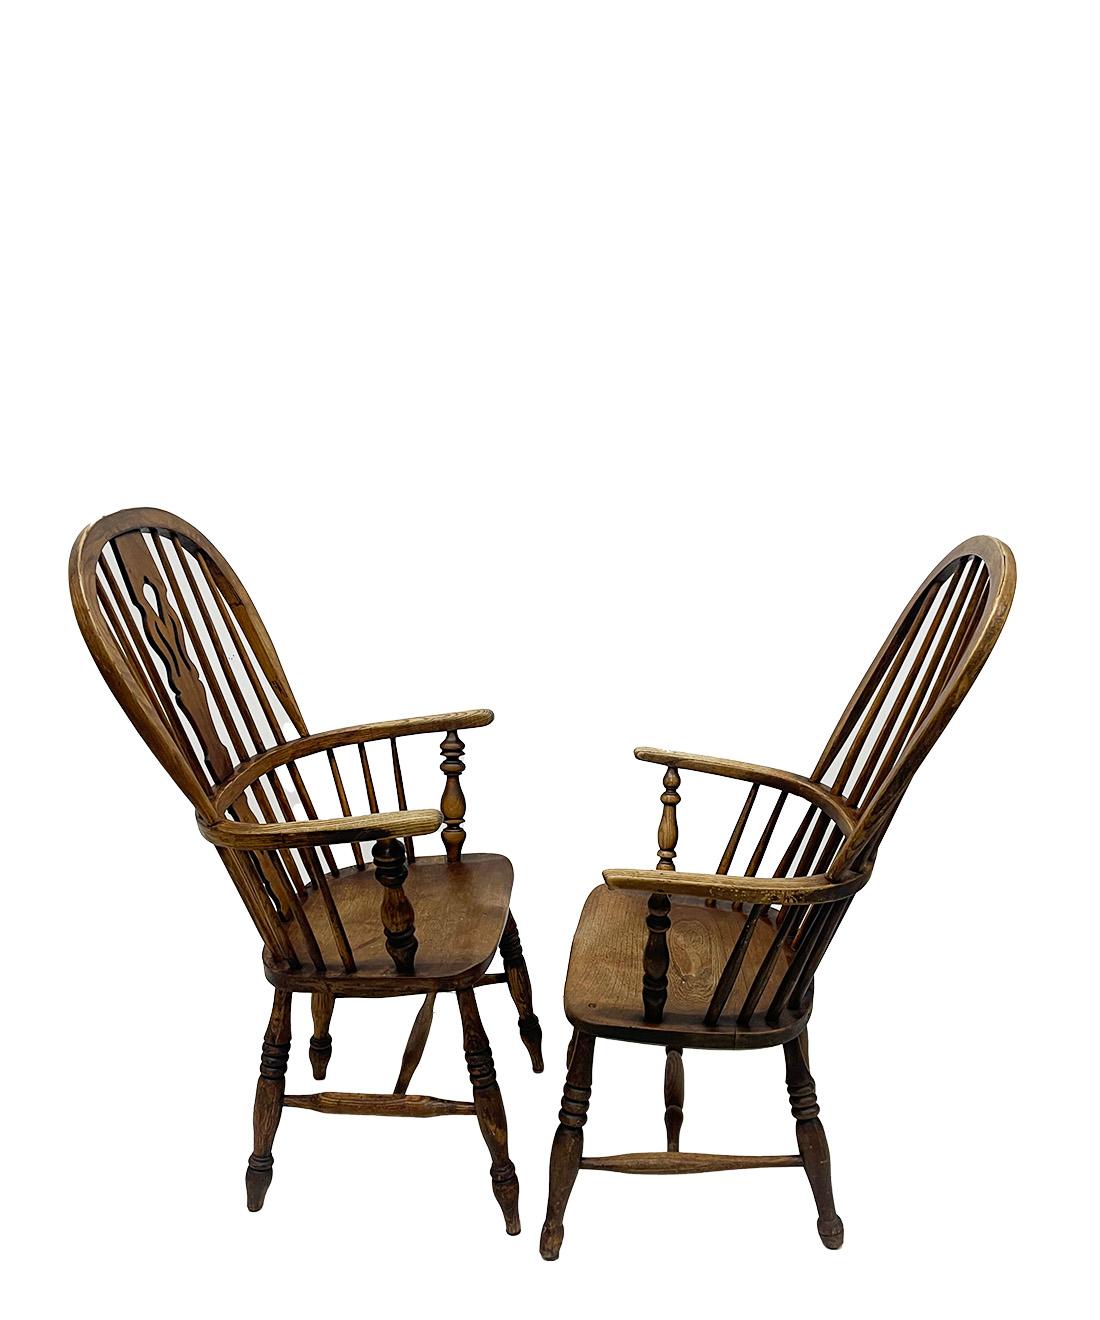 Fauteuils Windsor anglais du XIXe siècle

Ensemble de chaises Windsor en chêne à haut dossier arrondi et à barreaux. Les chaises ont des accoudoirs ronds et courbés sur 4 pieds en bois de chêne torsadé avec une seule connexion en H. L'assise des